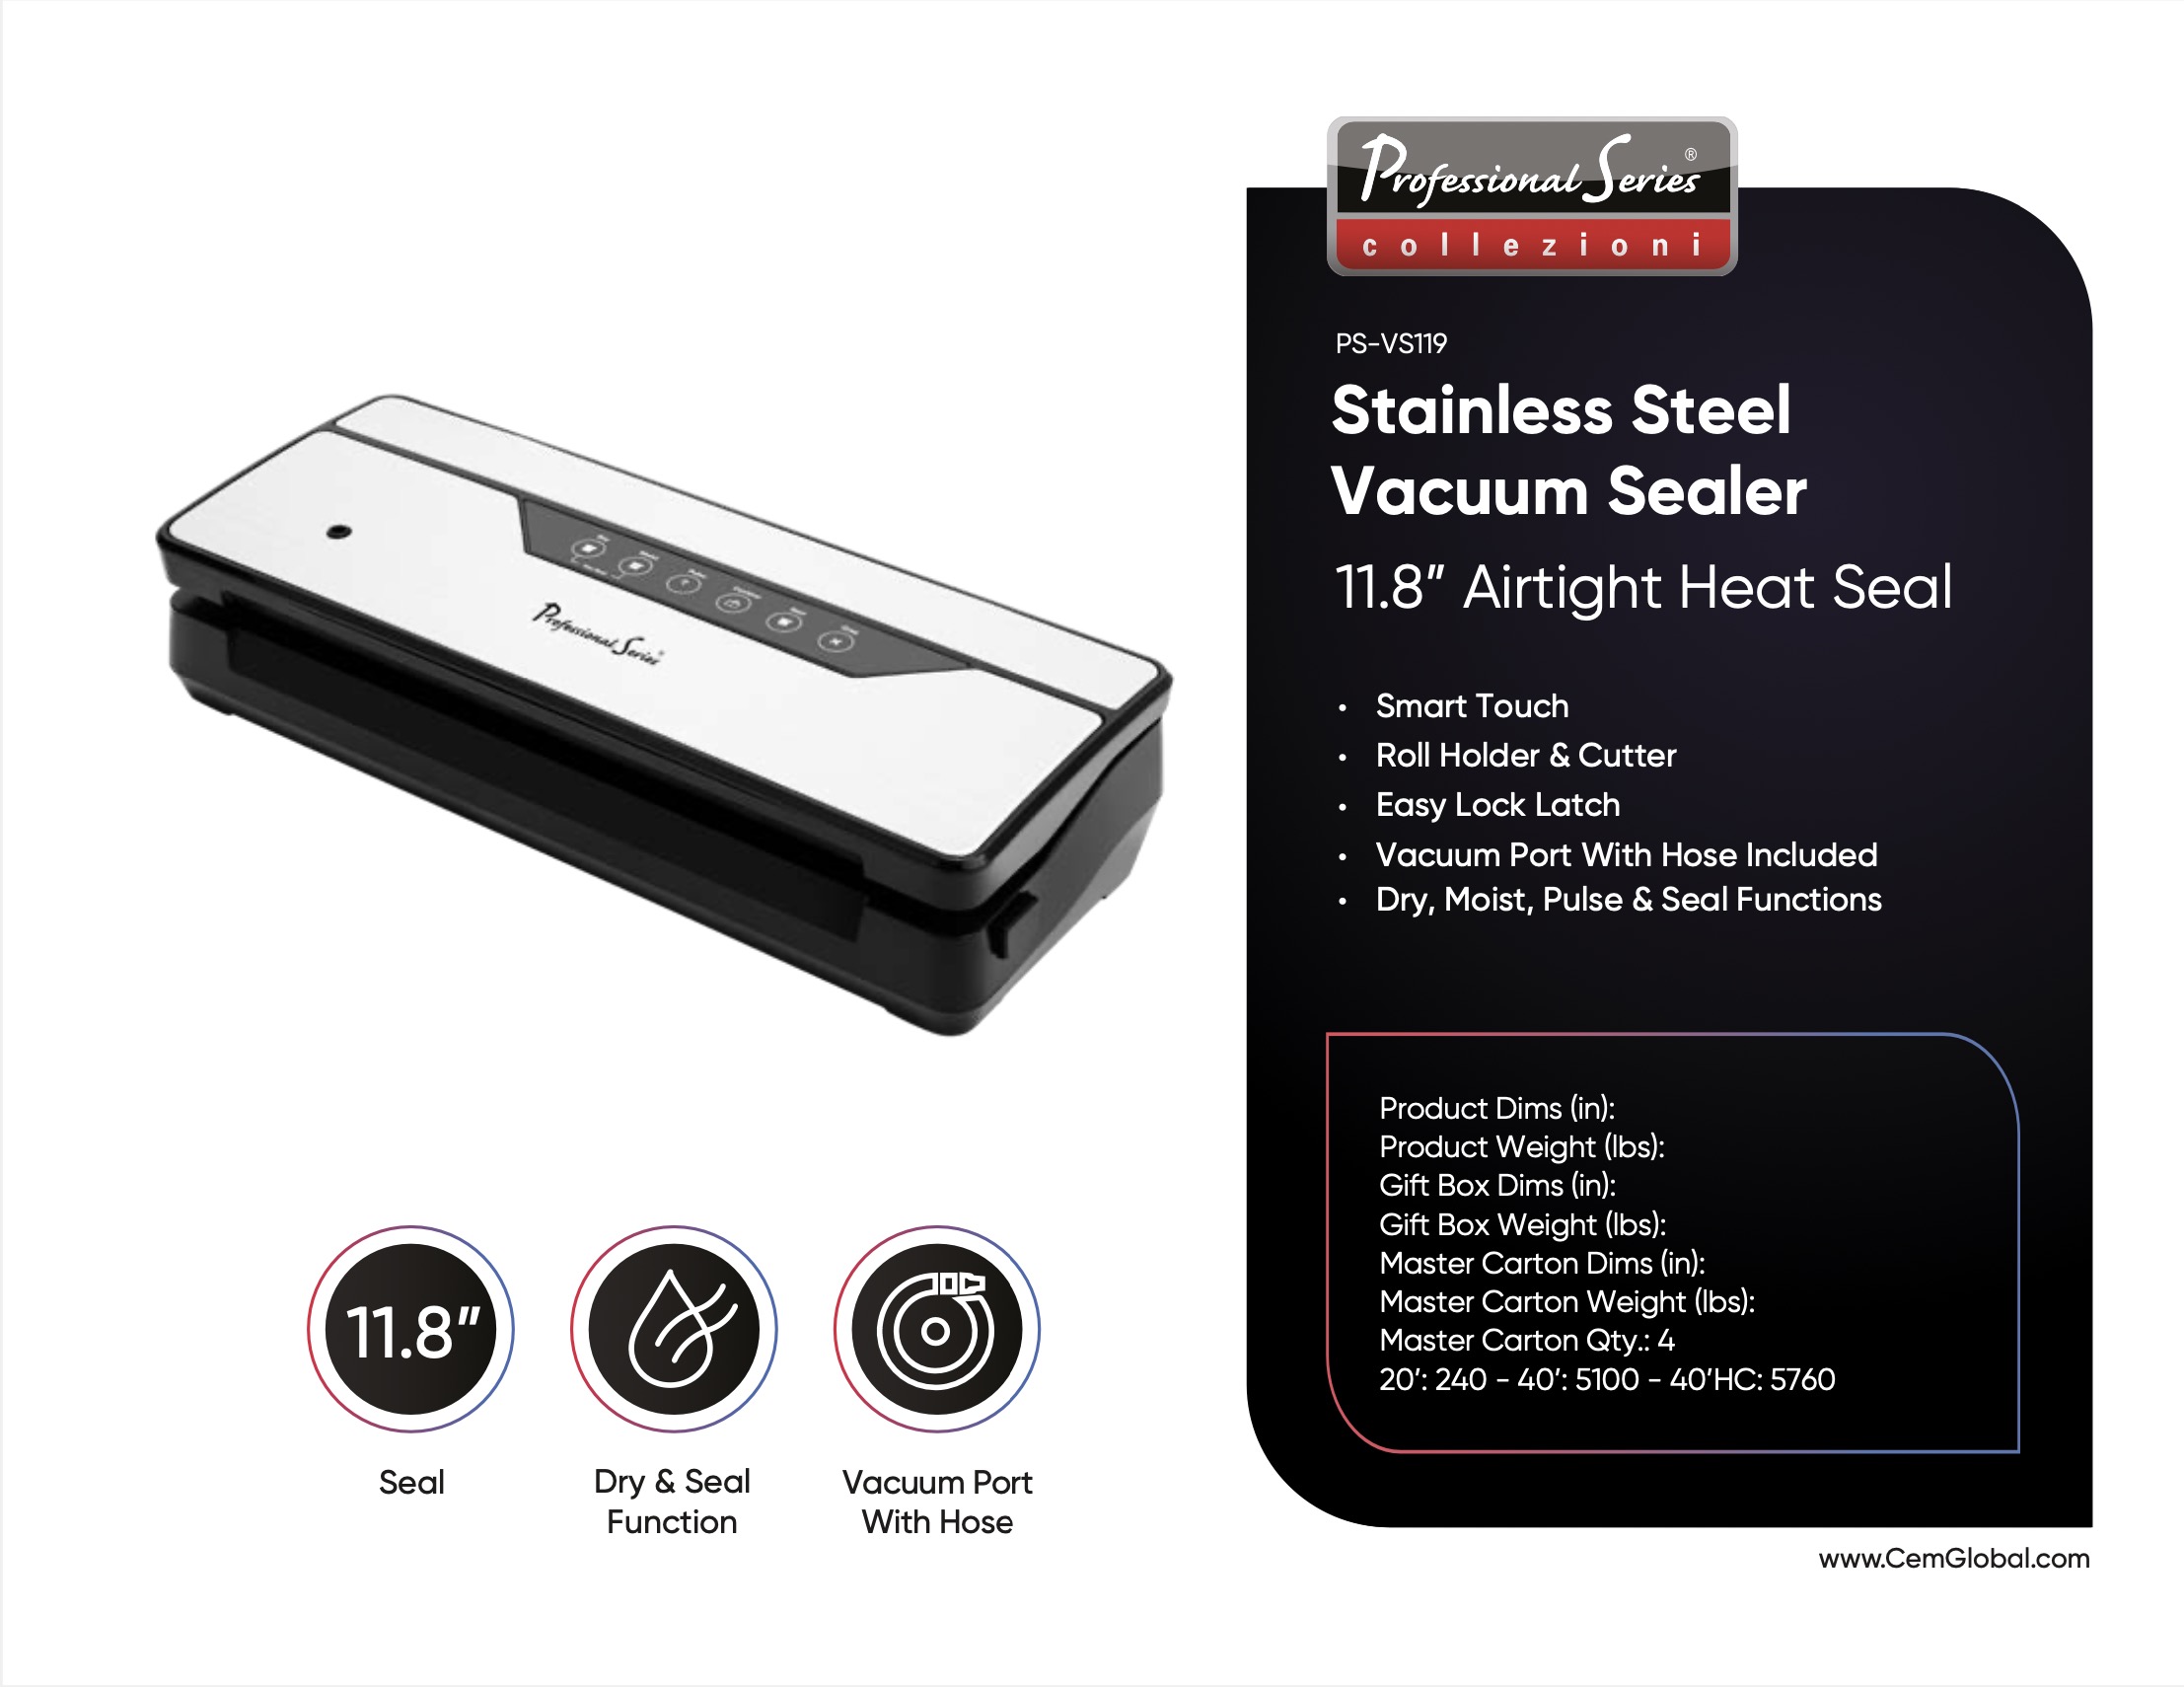 Stainless Steel Vacuum Sealer 11.8”